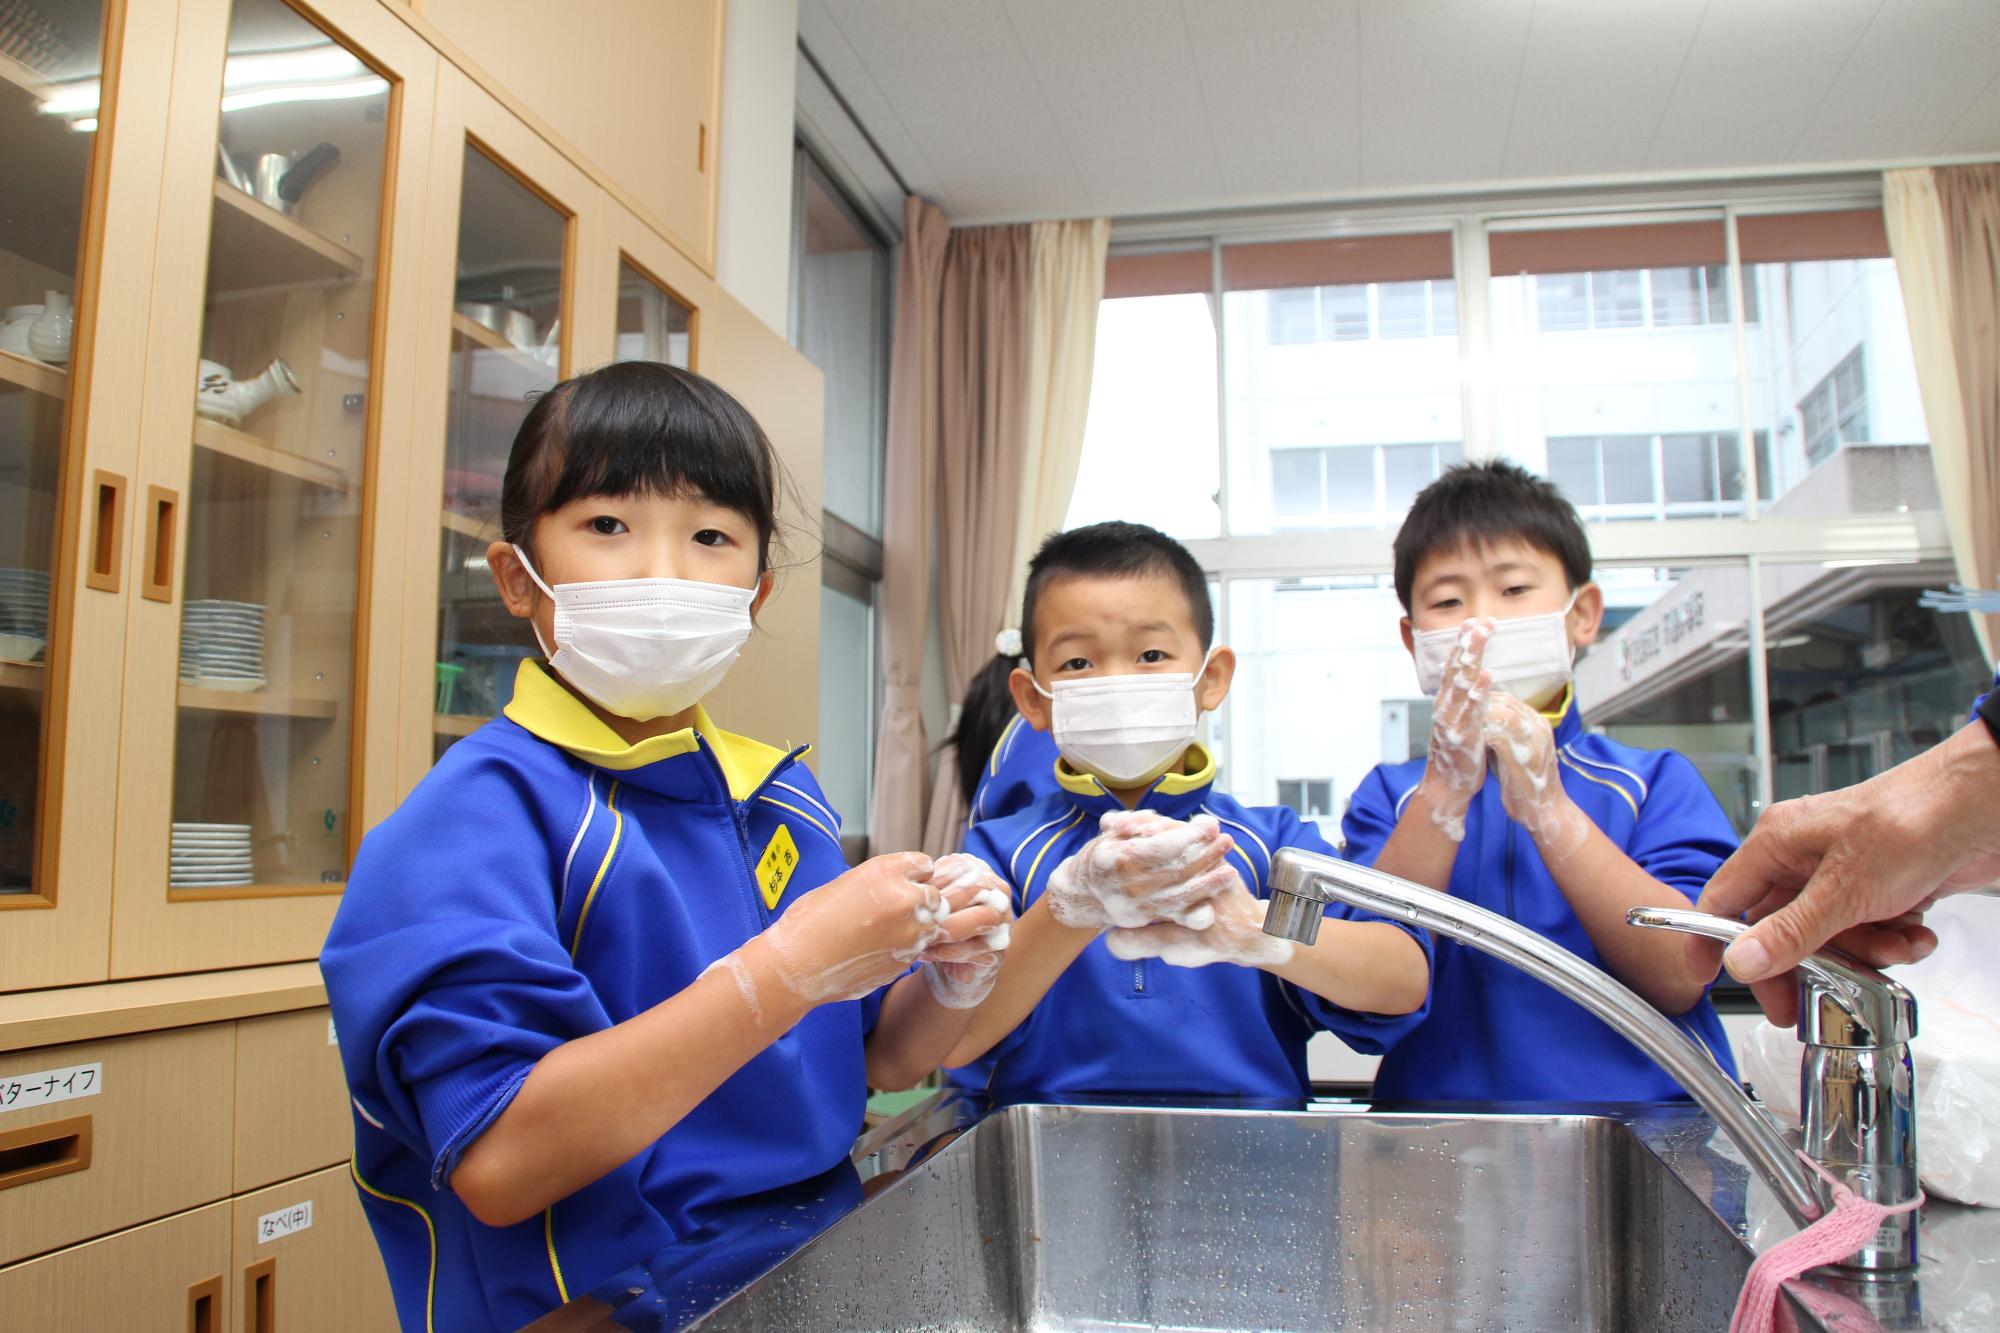 汚れが確認出来た部分を重点的に手洗いをする小学生の写真